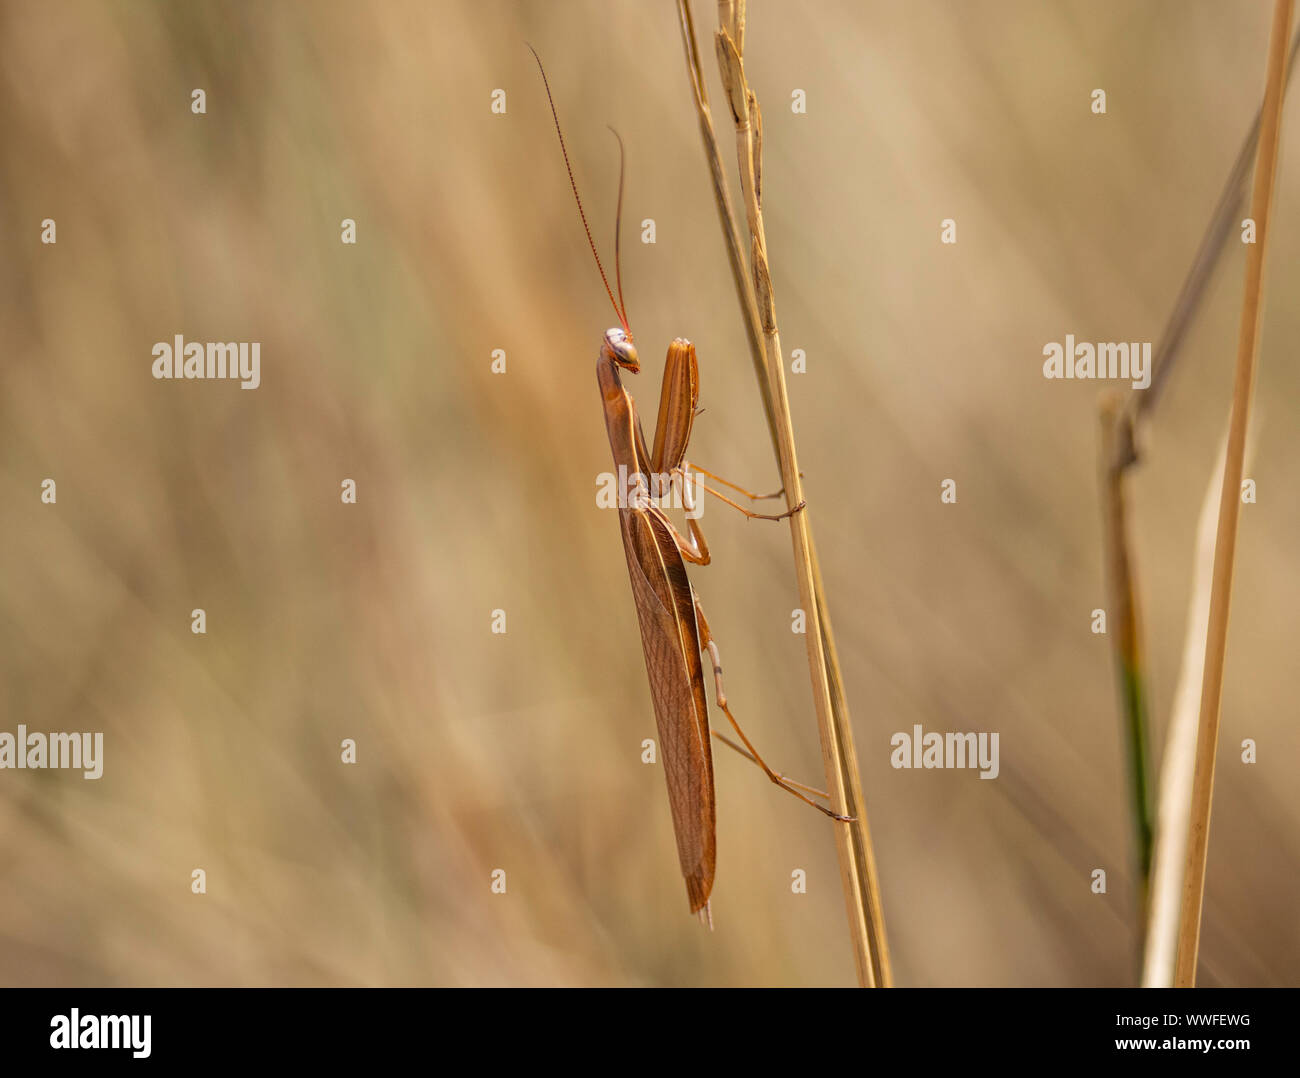 Brown Praying Mantis (Mantodea) Colorado, USA Stock Photo